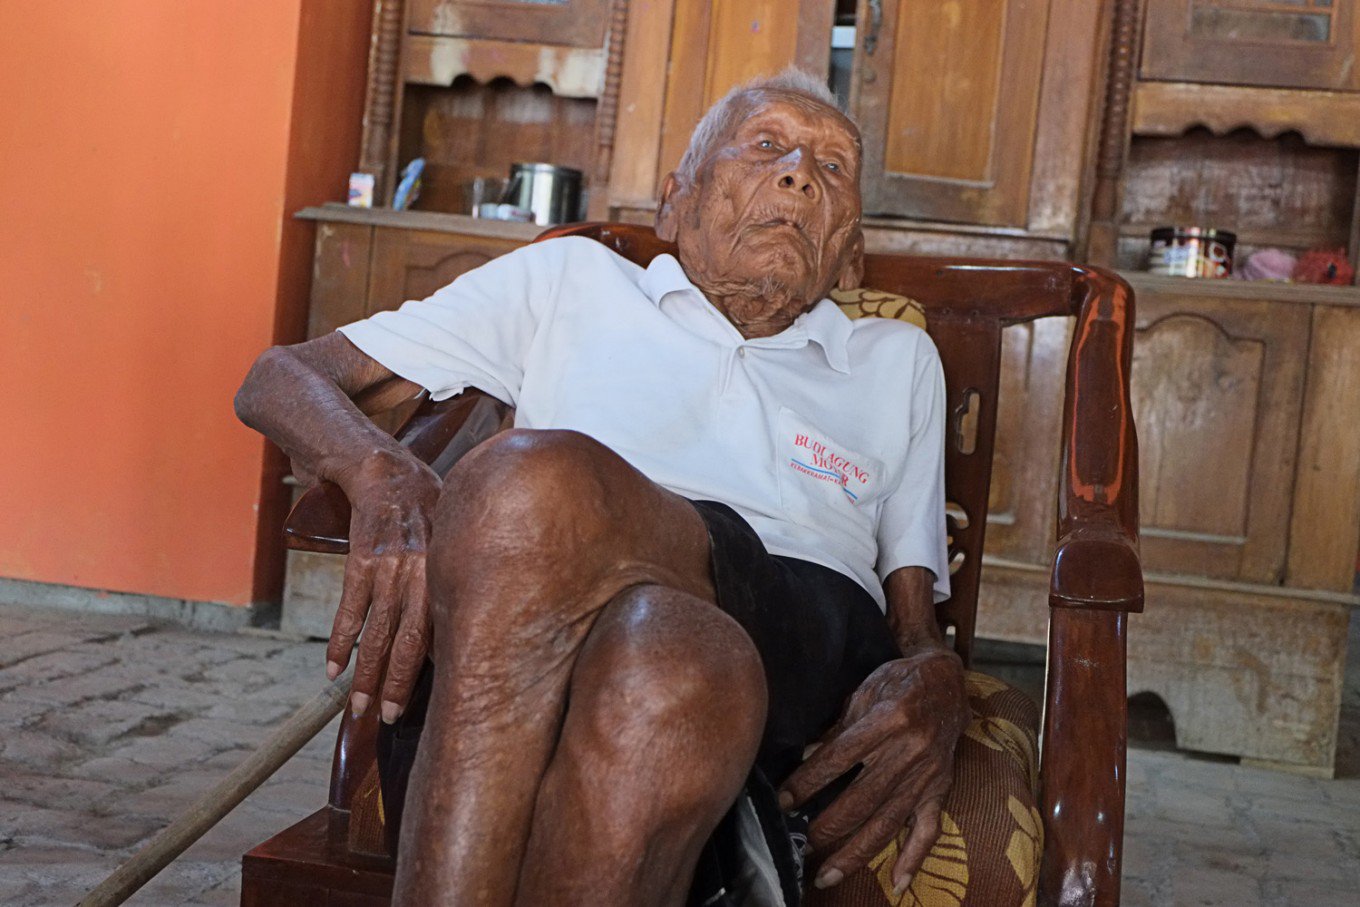  “Yo sólo quiero morir”: Hombre más longevo del mundo